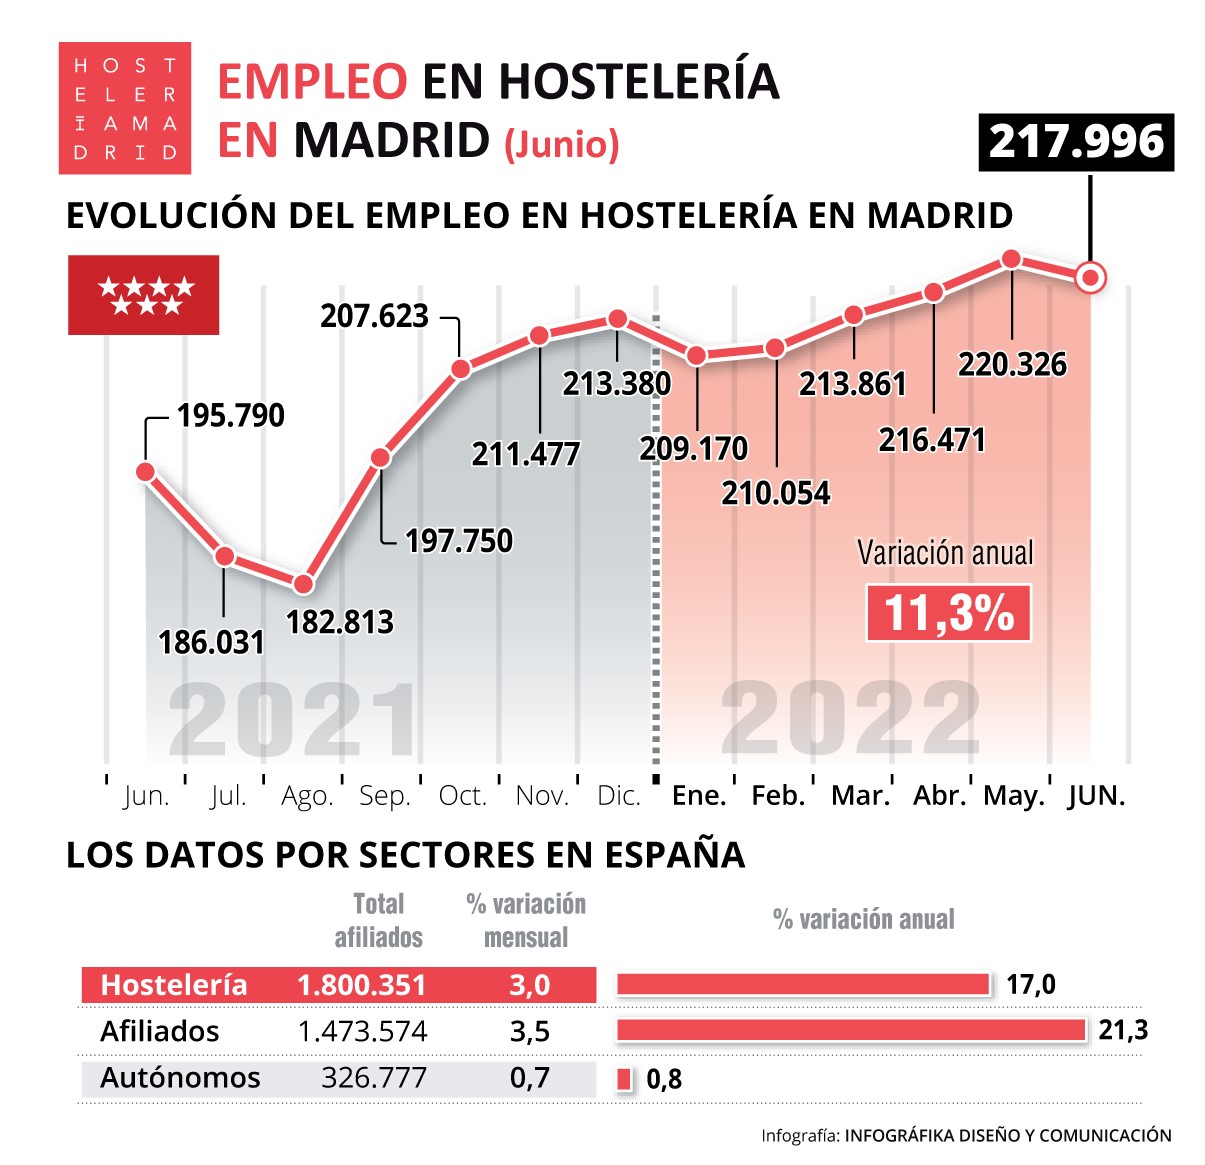 La hostelería de Madrid registró 217.996 trabajadores afiliados a la Seguridad Social durante el mes de junio - La Viña